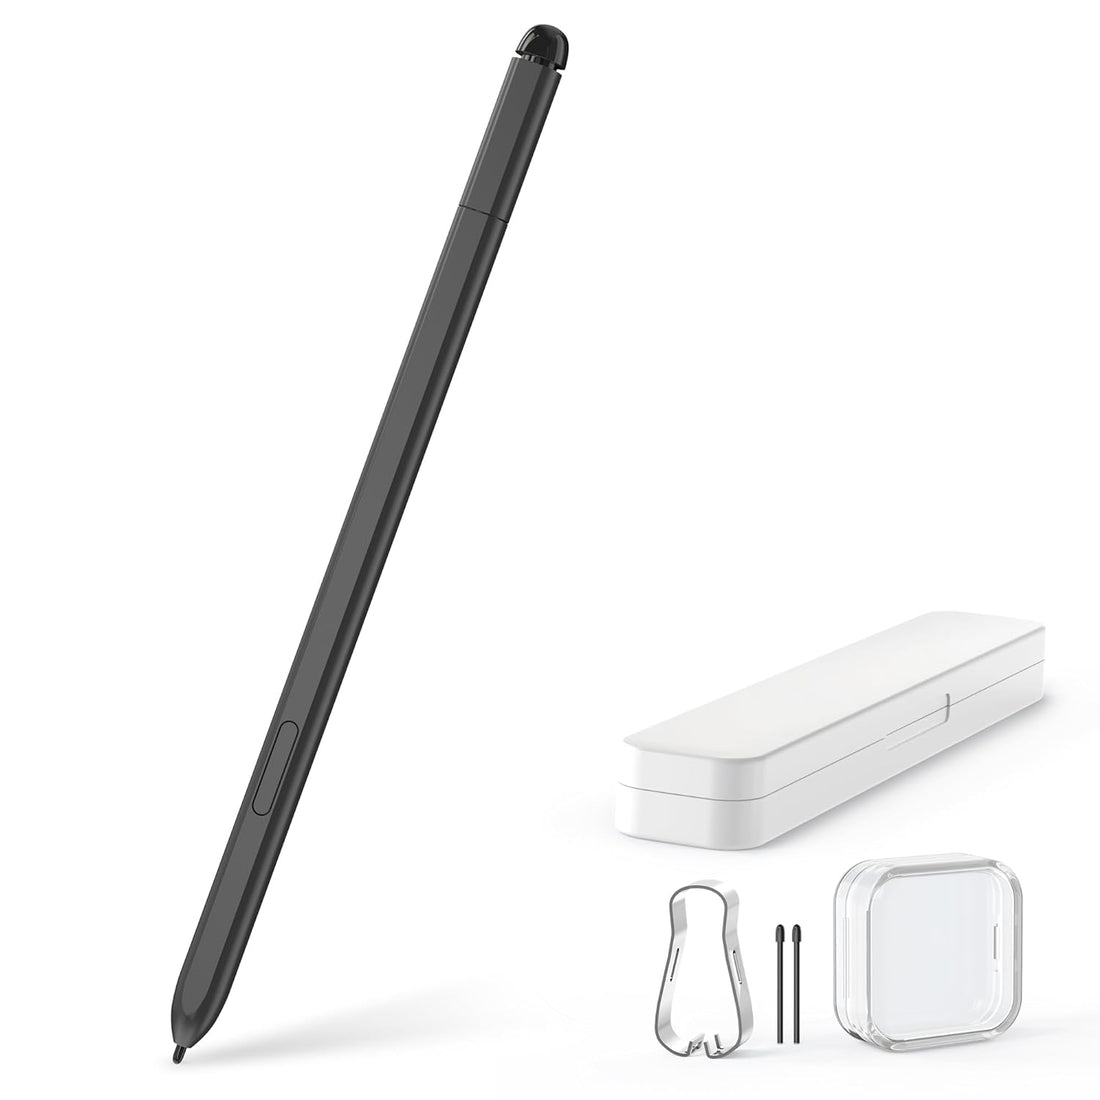 EMR Stylus Pen with Digital Eraser for Remarkable Tablets